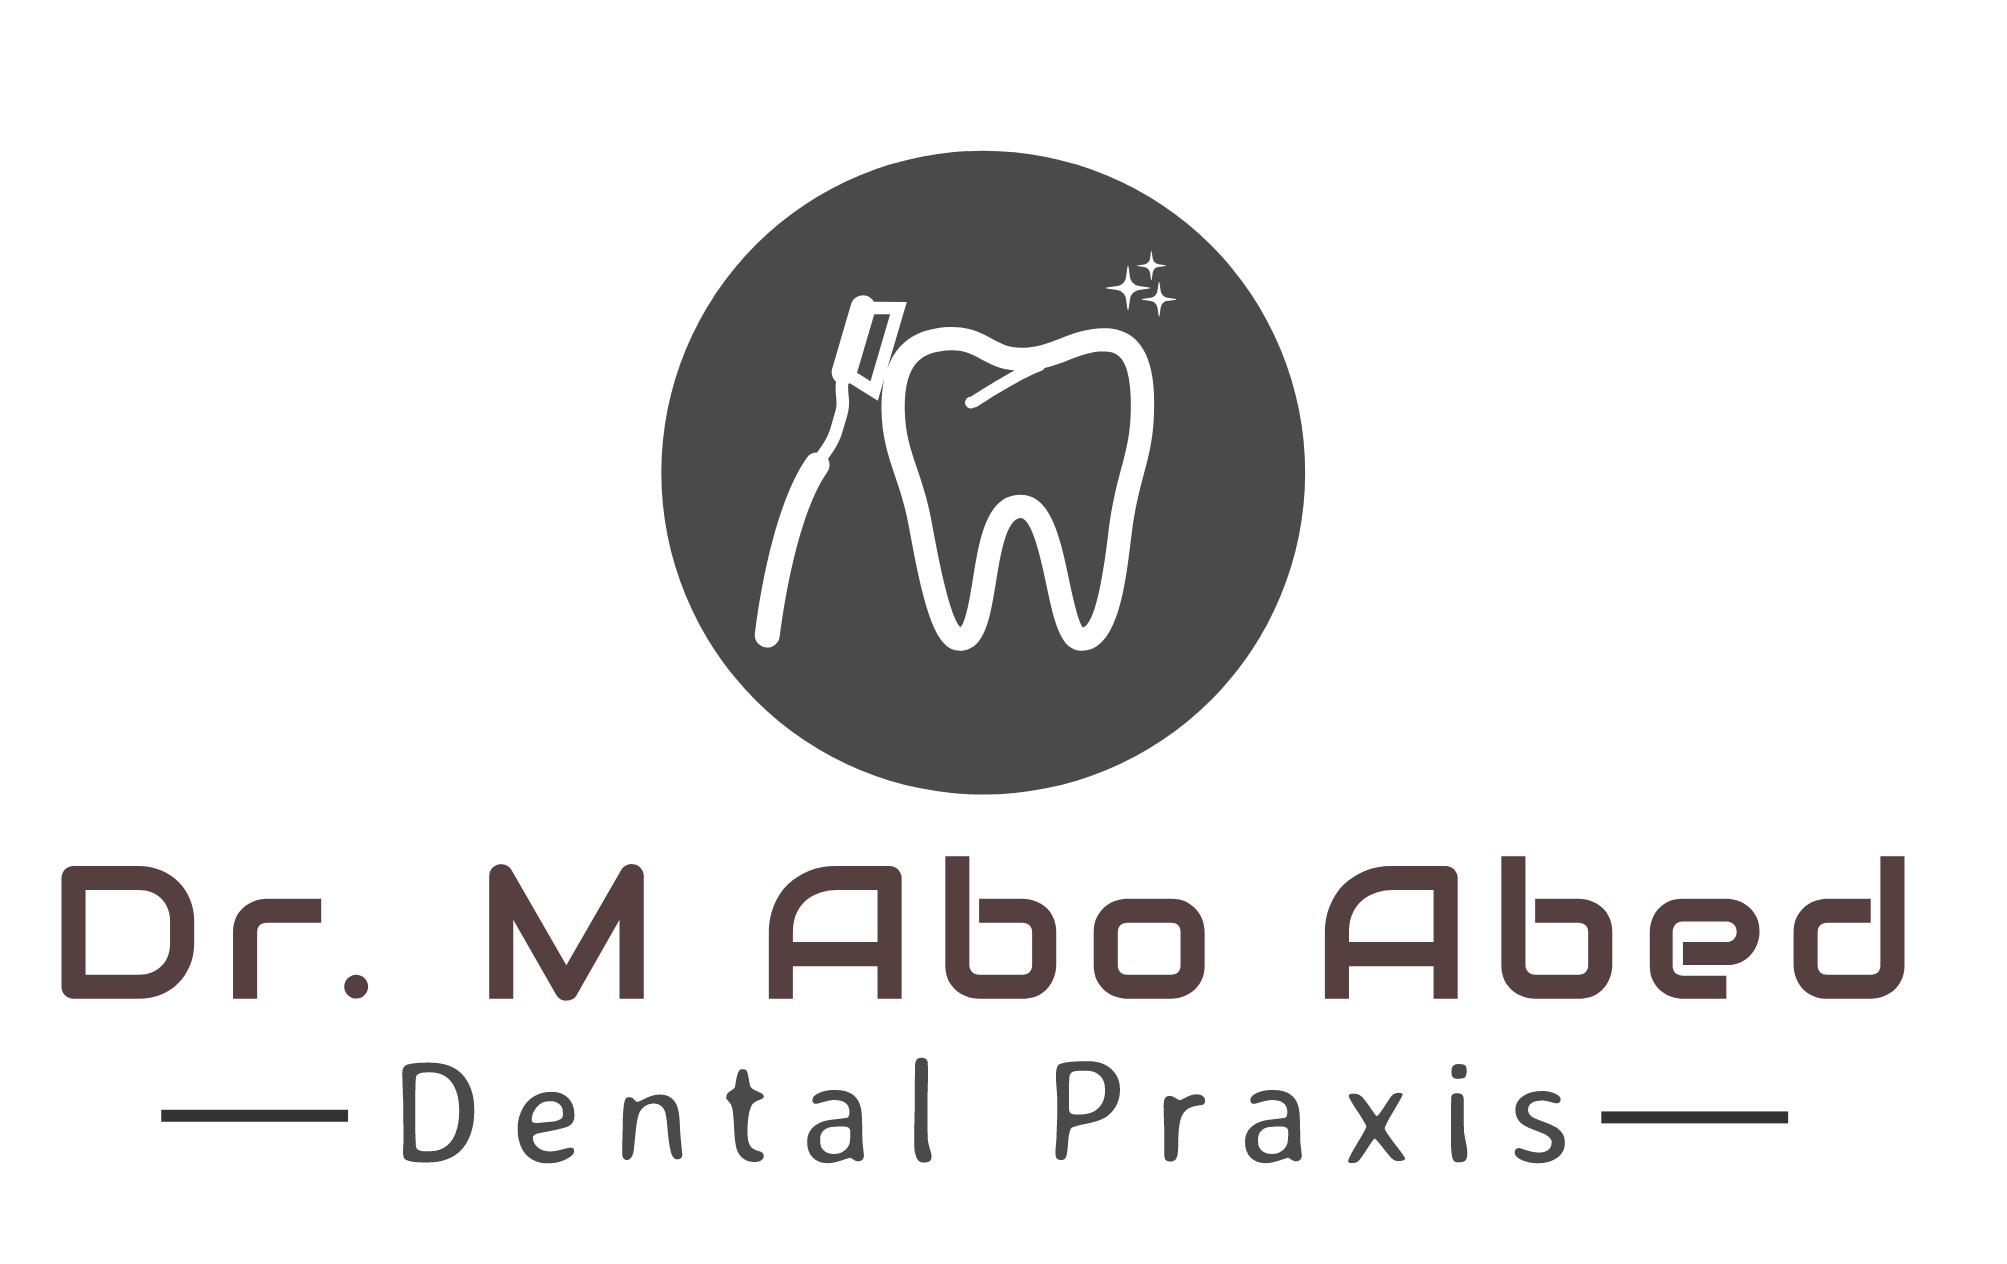 ד"ר מוחמד אבו עביד - מרפאת שיניים image